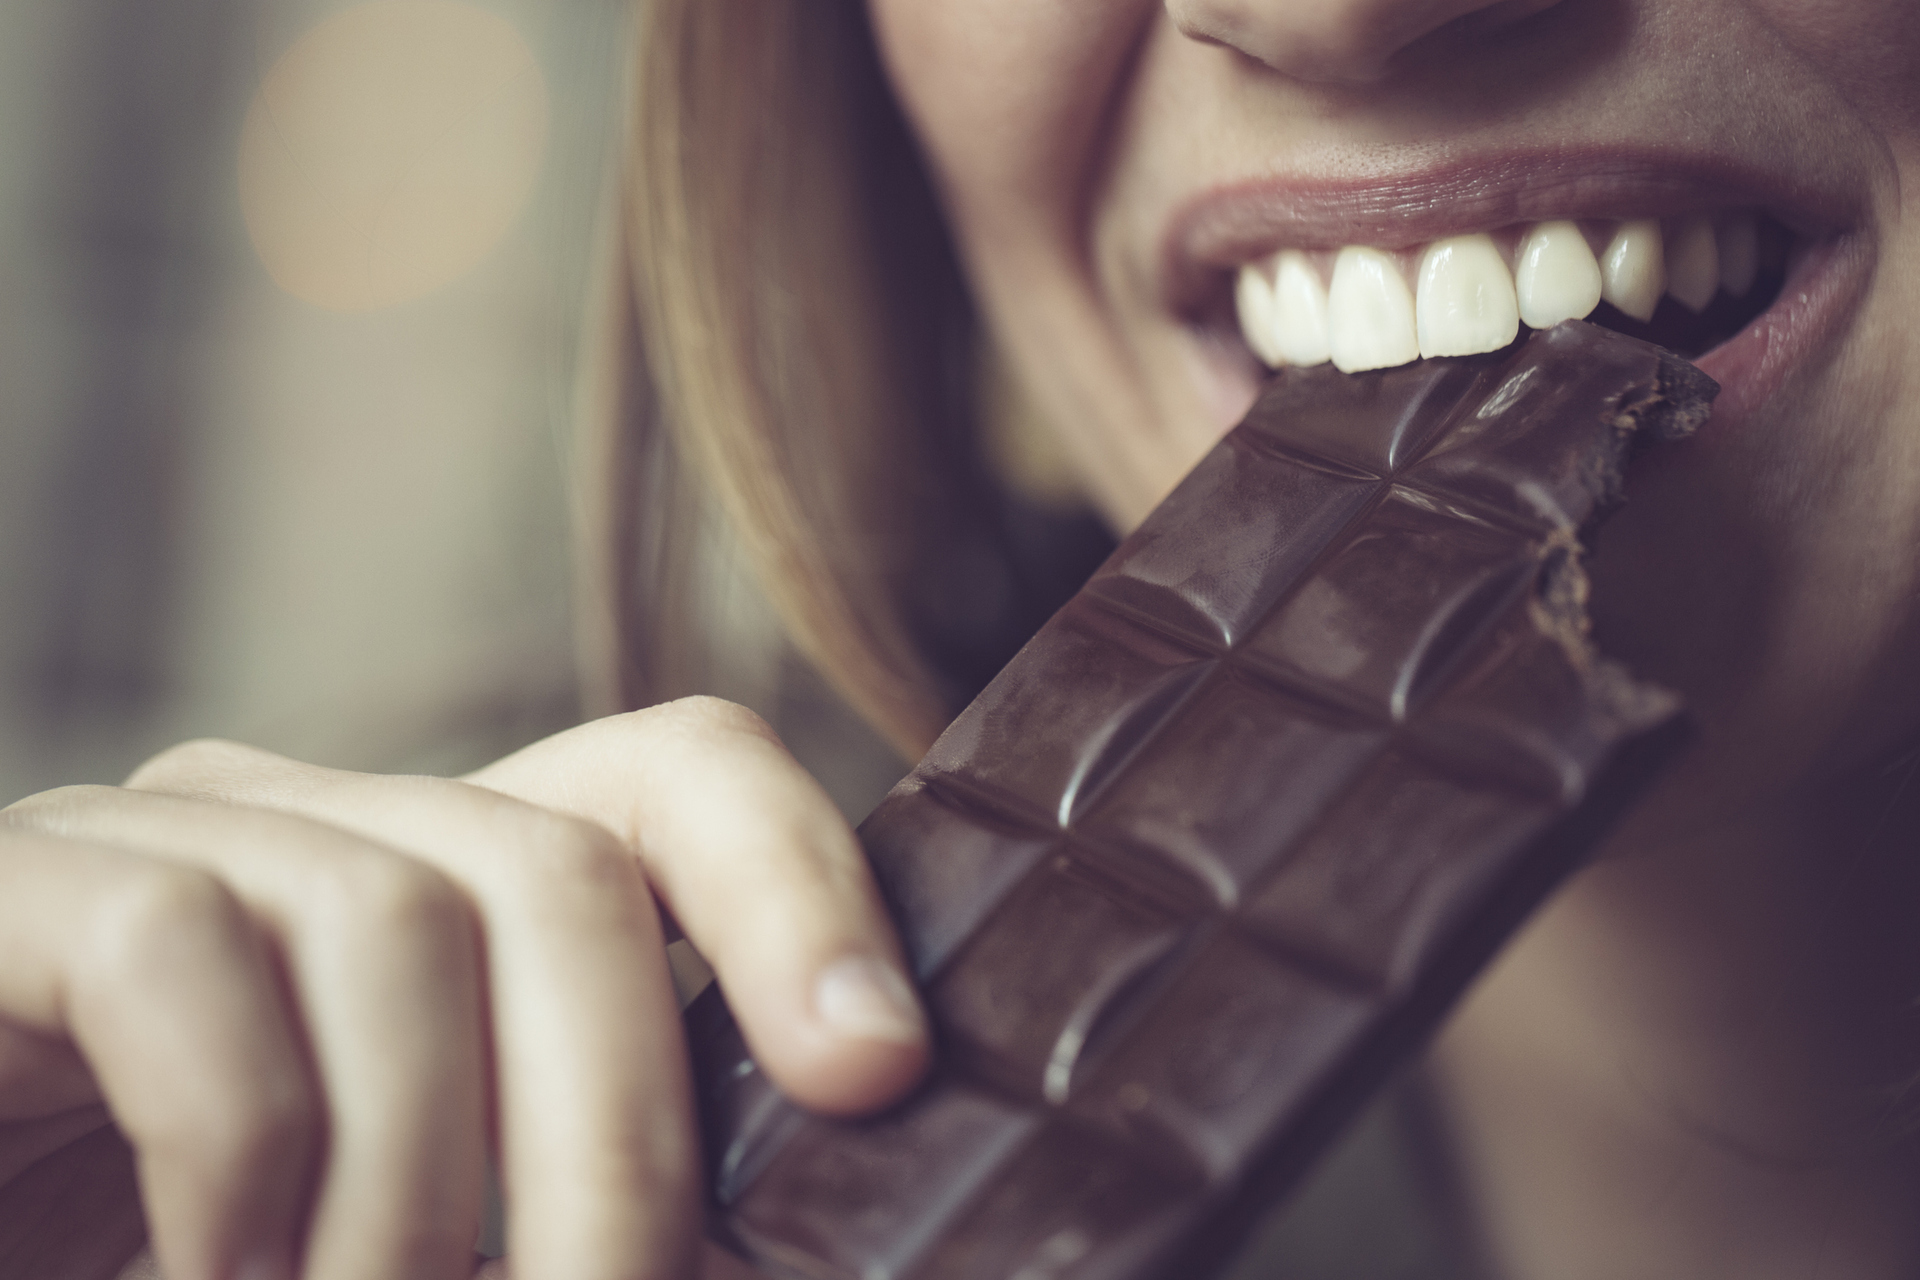 O chocolate do tipo mais amargo, aquele que apresenta 60% ou 70% de cacau na fórmula, proporciona inúmeros benefícios para a saúde, incluindo redução de cólica – iStock/Getty Images